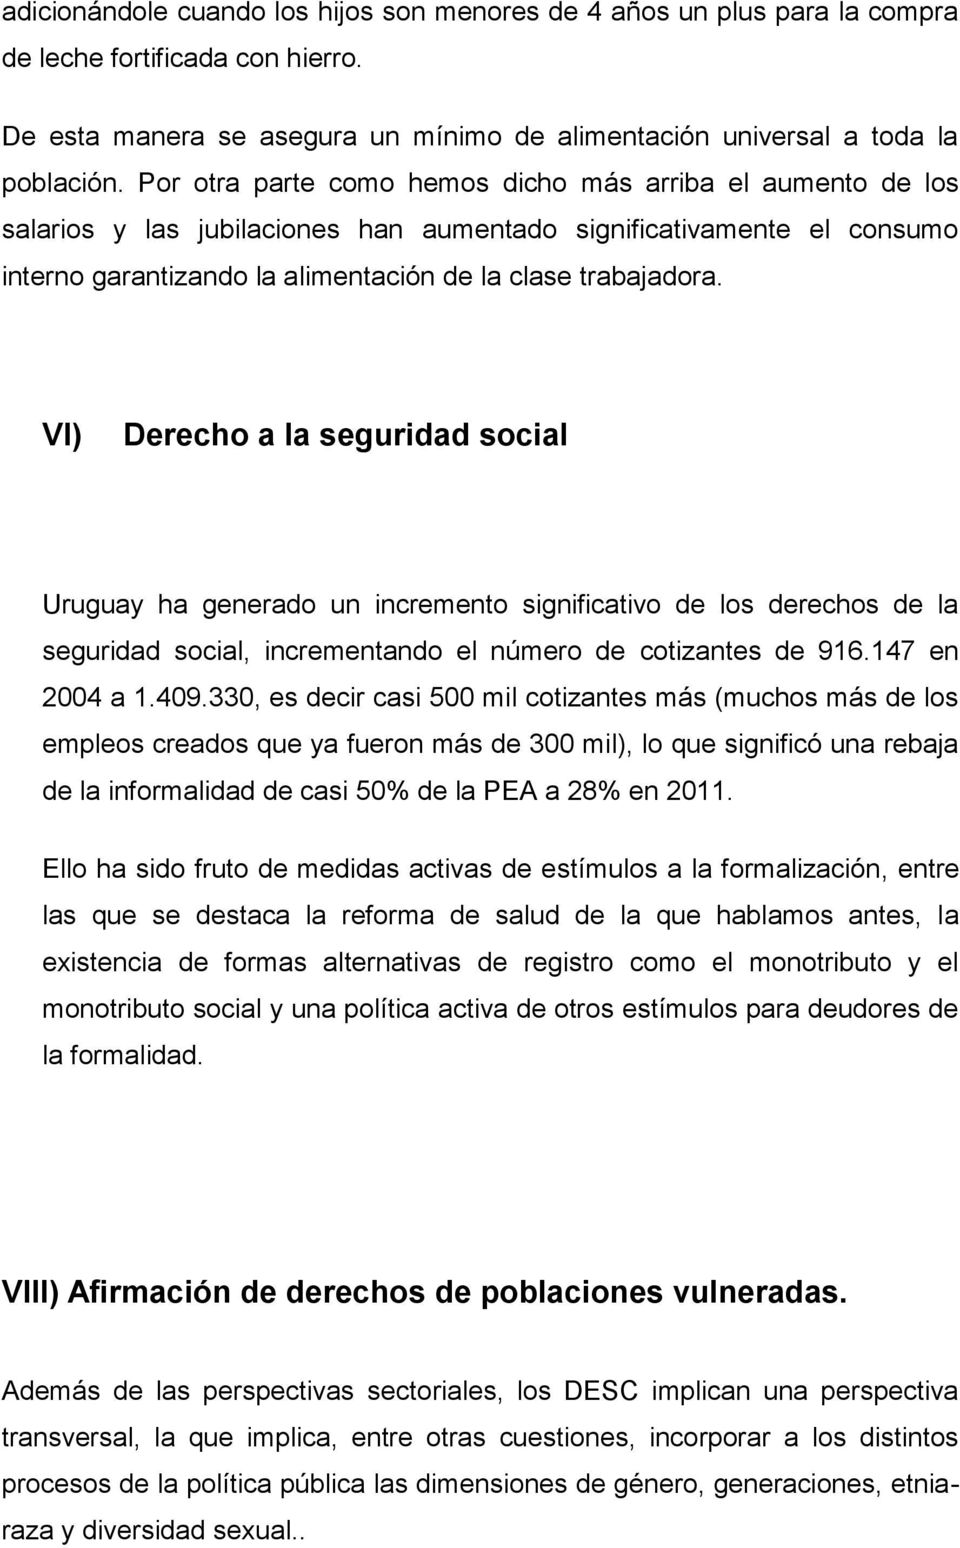 VI) Derecho a la seguridad social Uruguay ha generado un incremento significativo de los derechos de la seguridad social, incrementando el número de cotizantes de 916.147 en 2004 a 1.409.